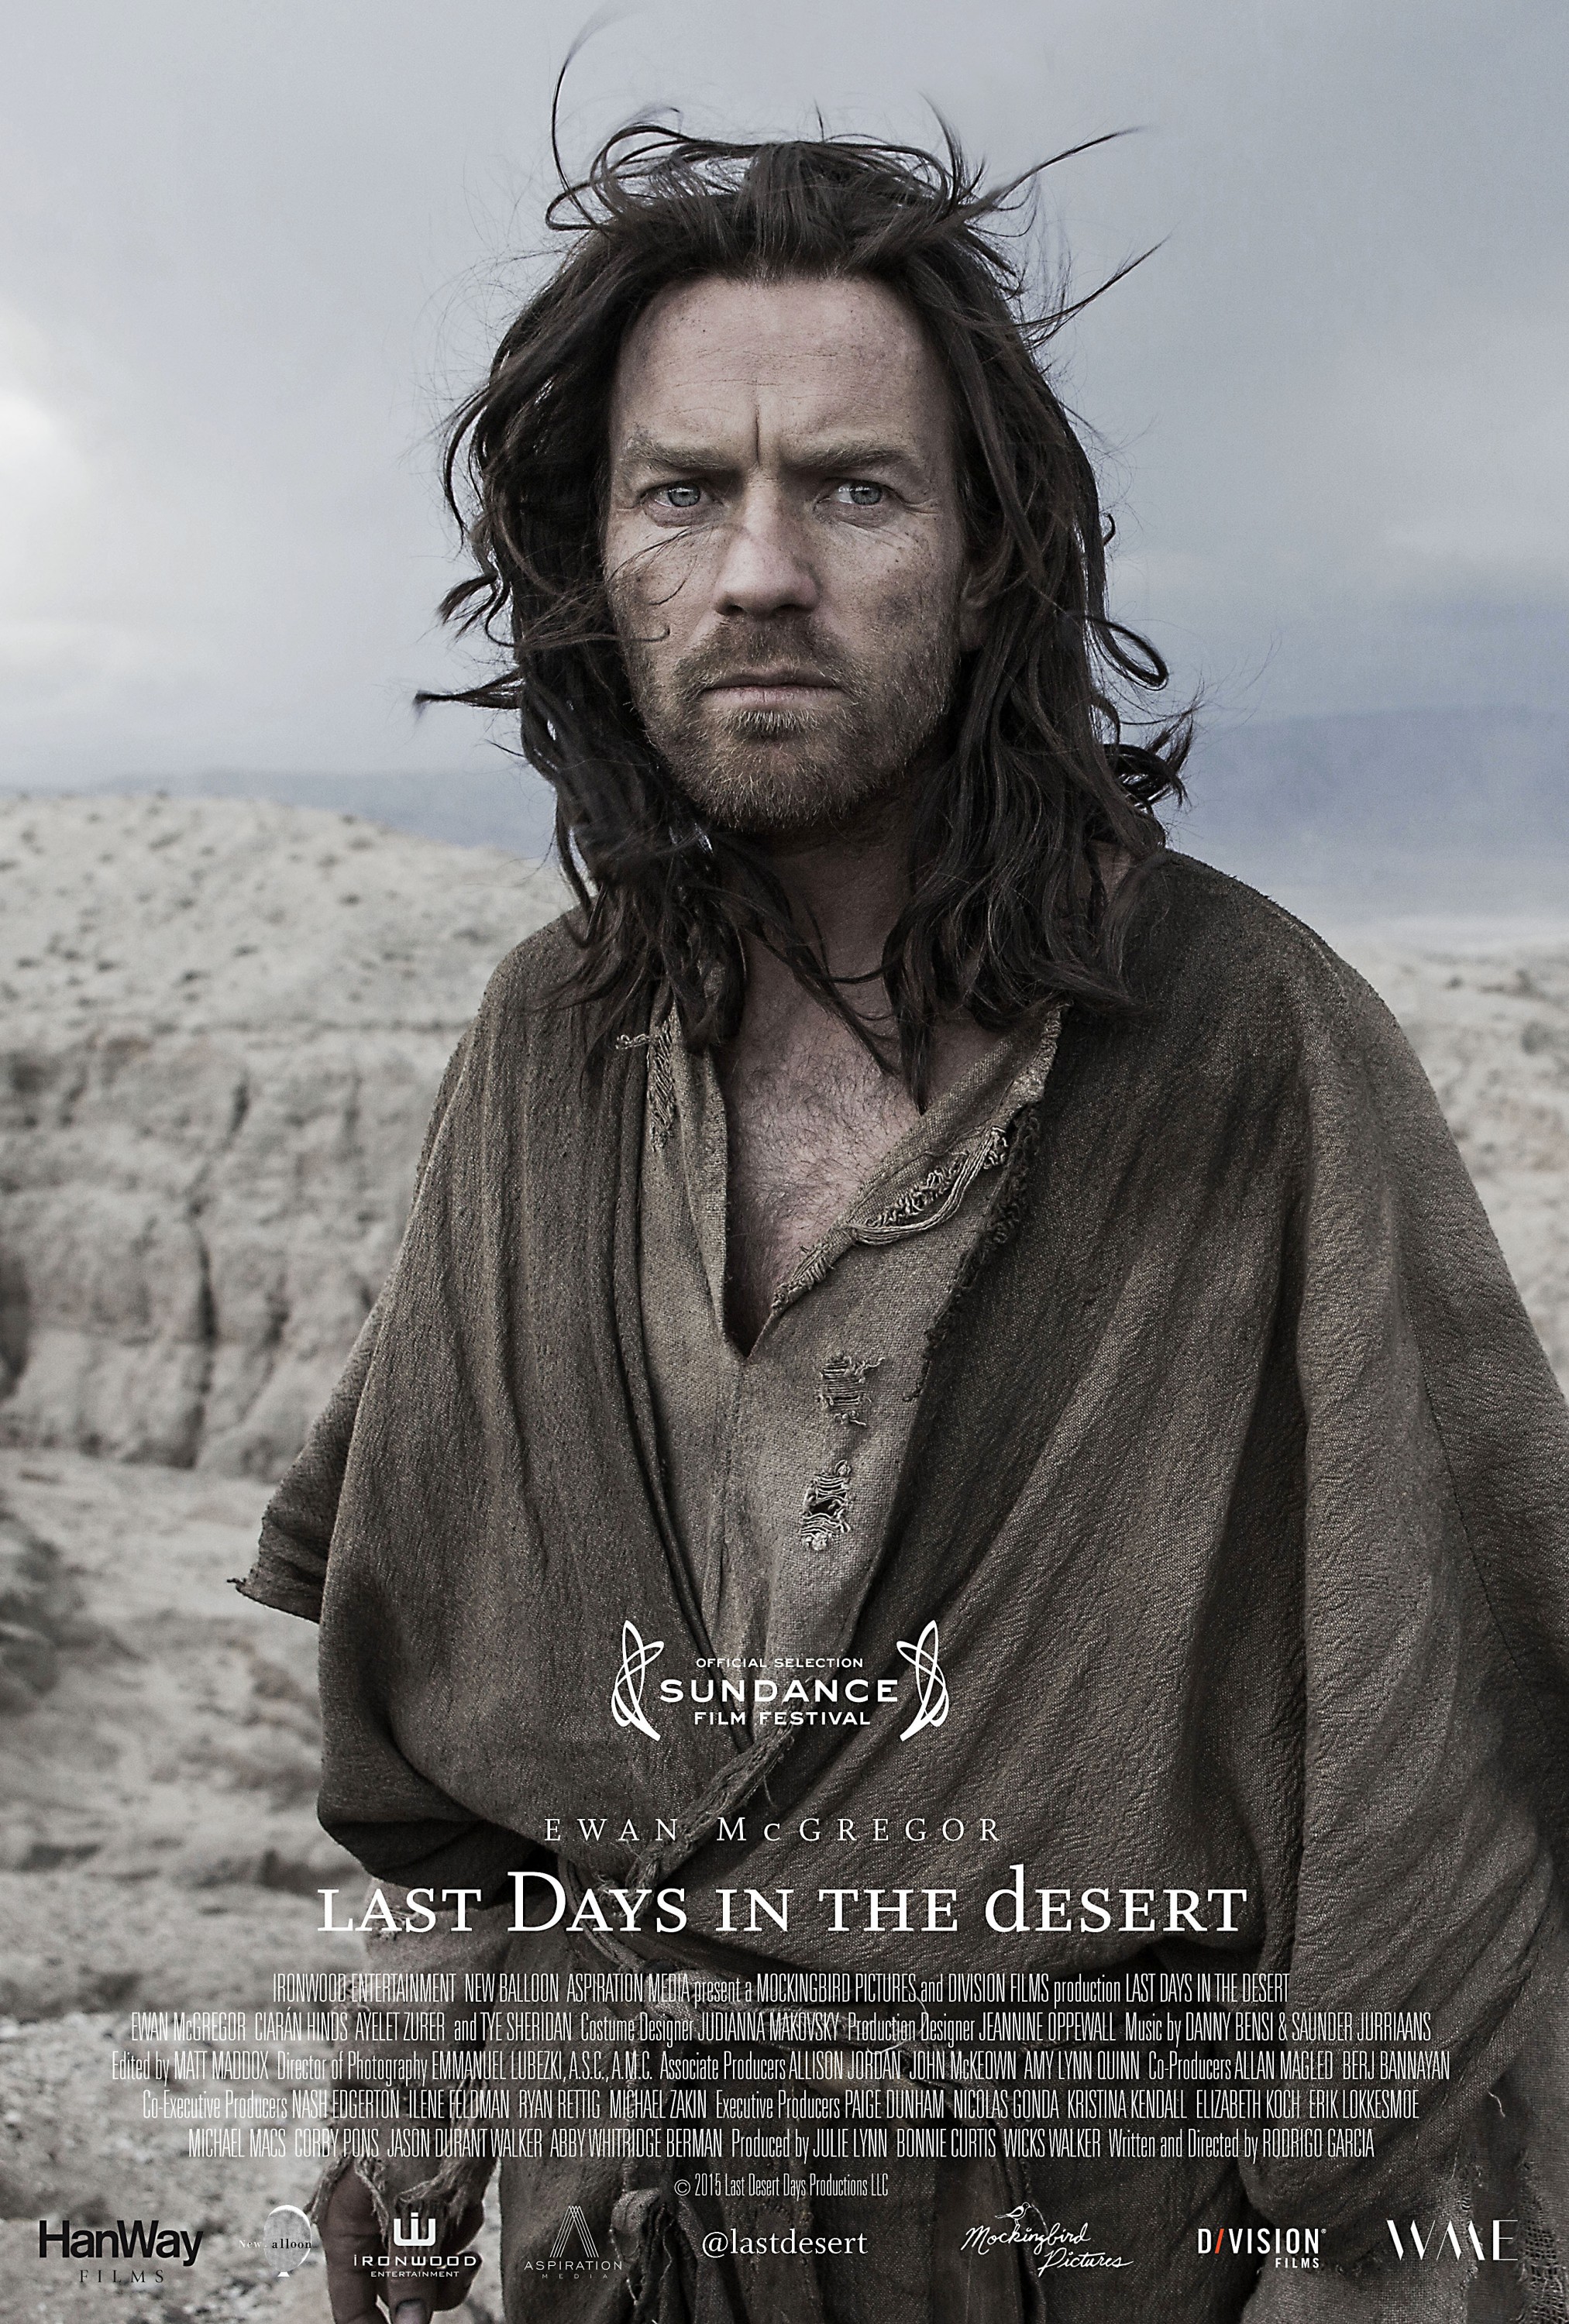 [Sundance Review] Last Days in the Desert